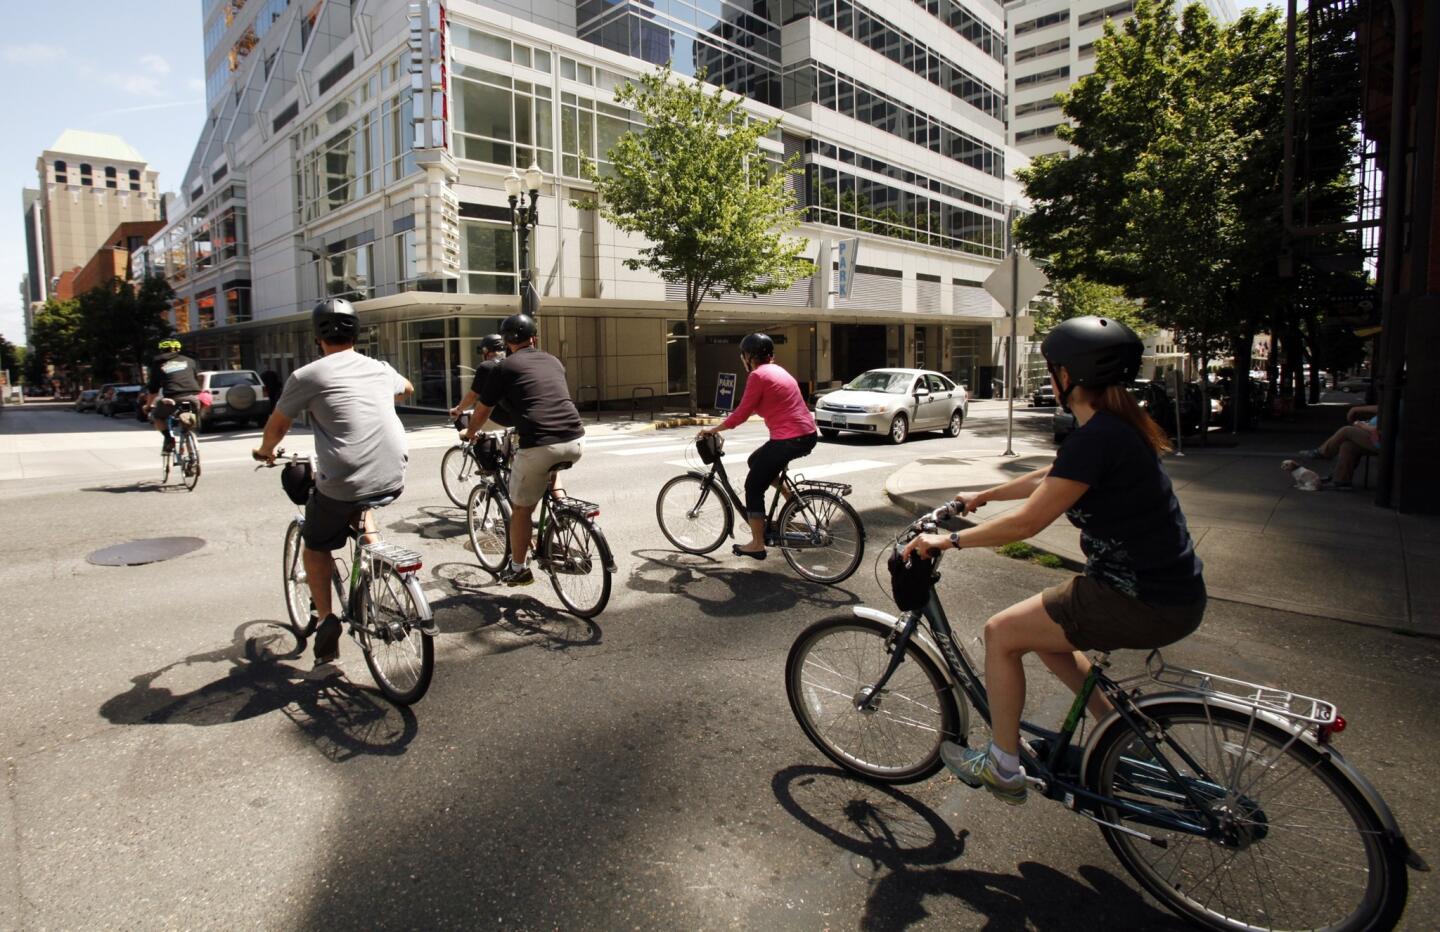 A bike-friendly city